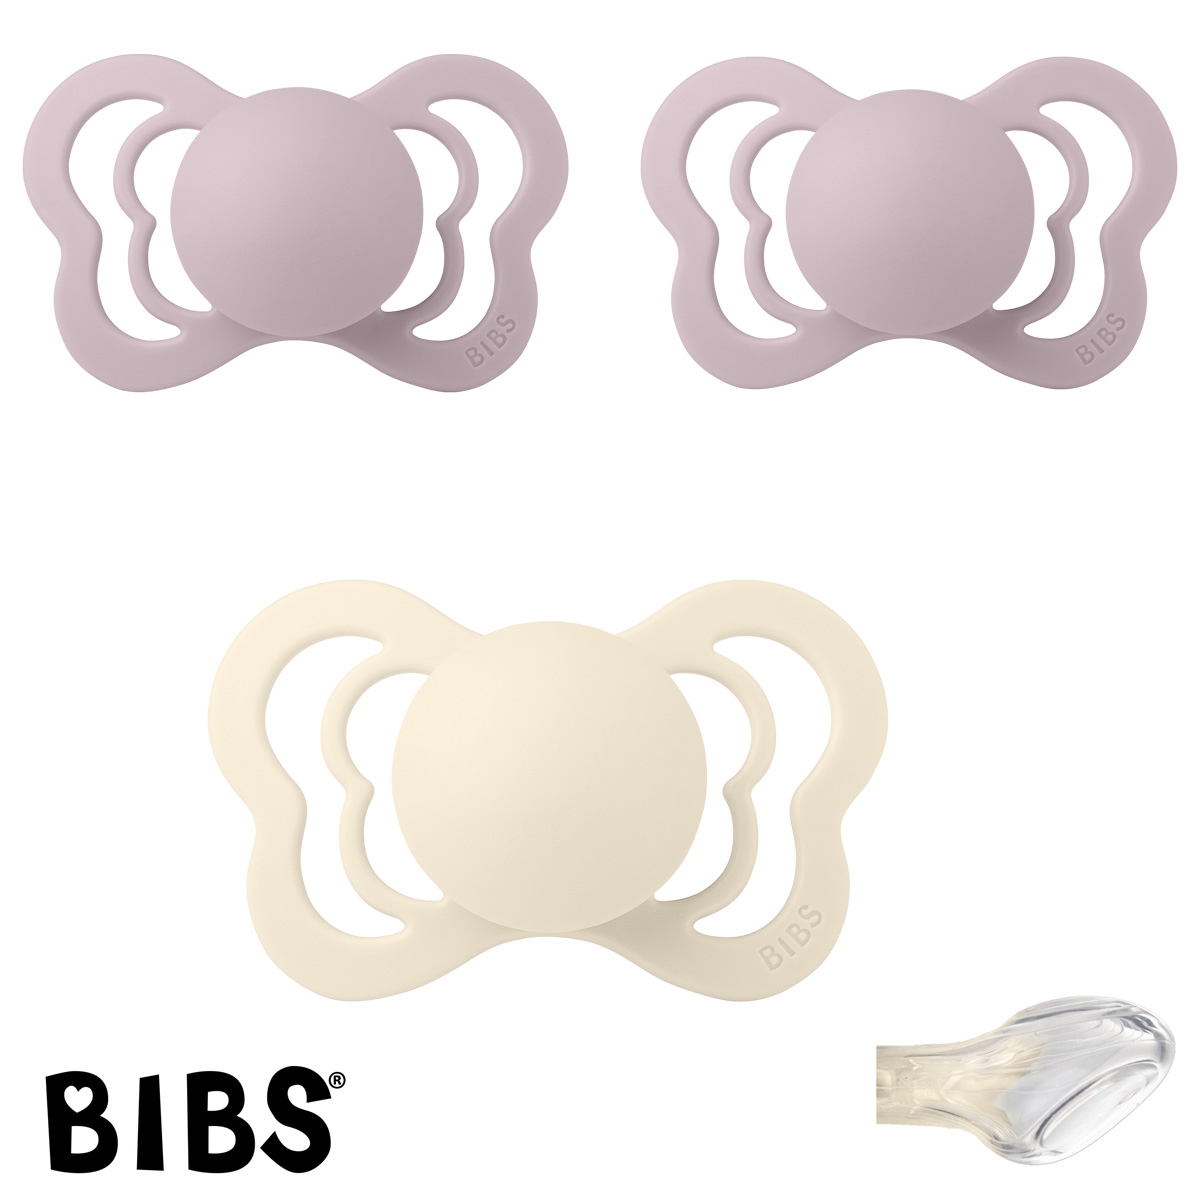 BIBS Couture Sutter med navn str2, 1 Ivory, 2 Dusky Lilac, Anatomisk Silikone, Pakke med 3 sutter